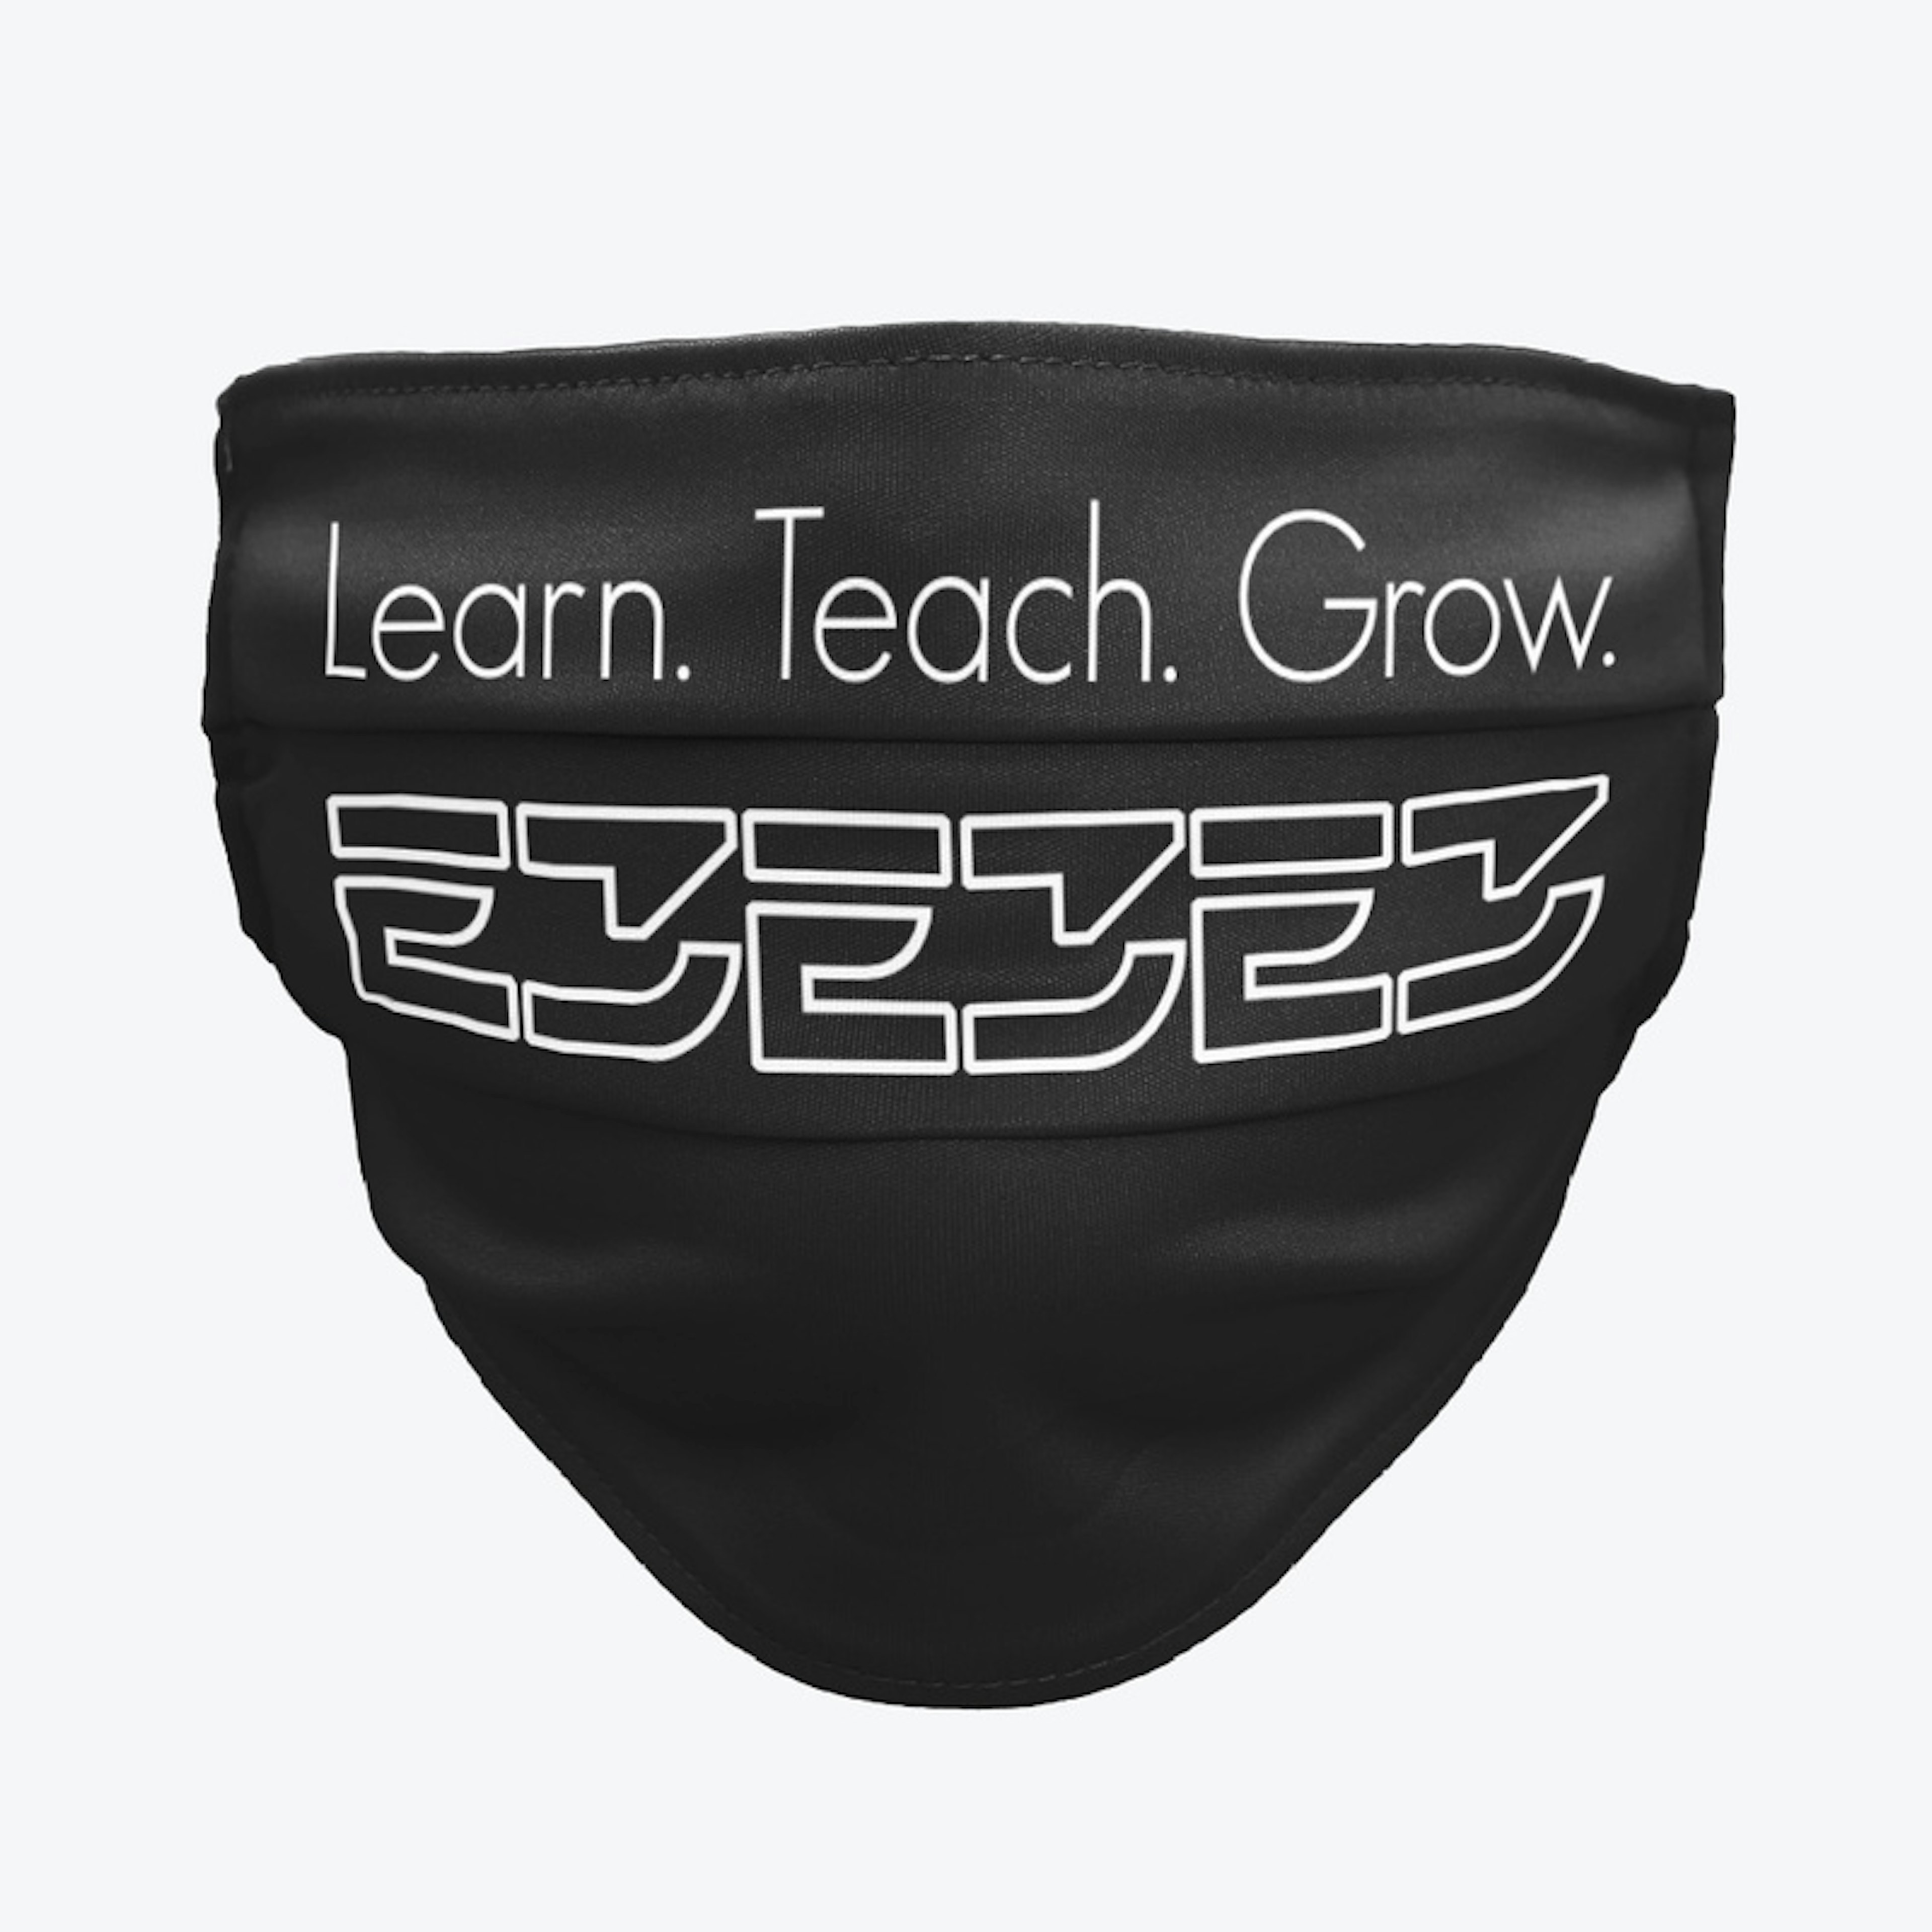 Learn. Teach. Grow.